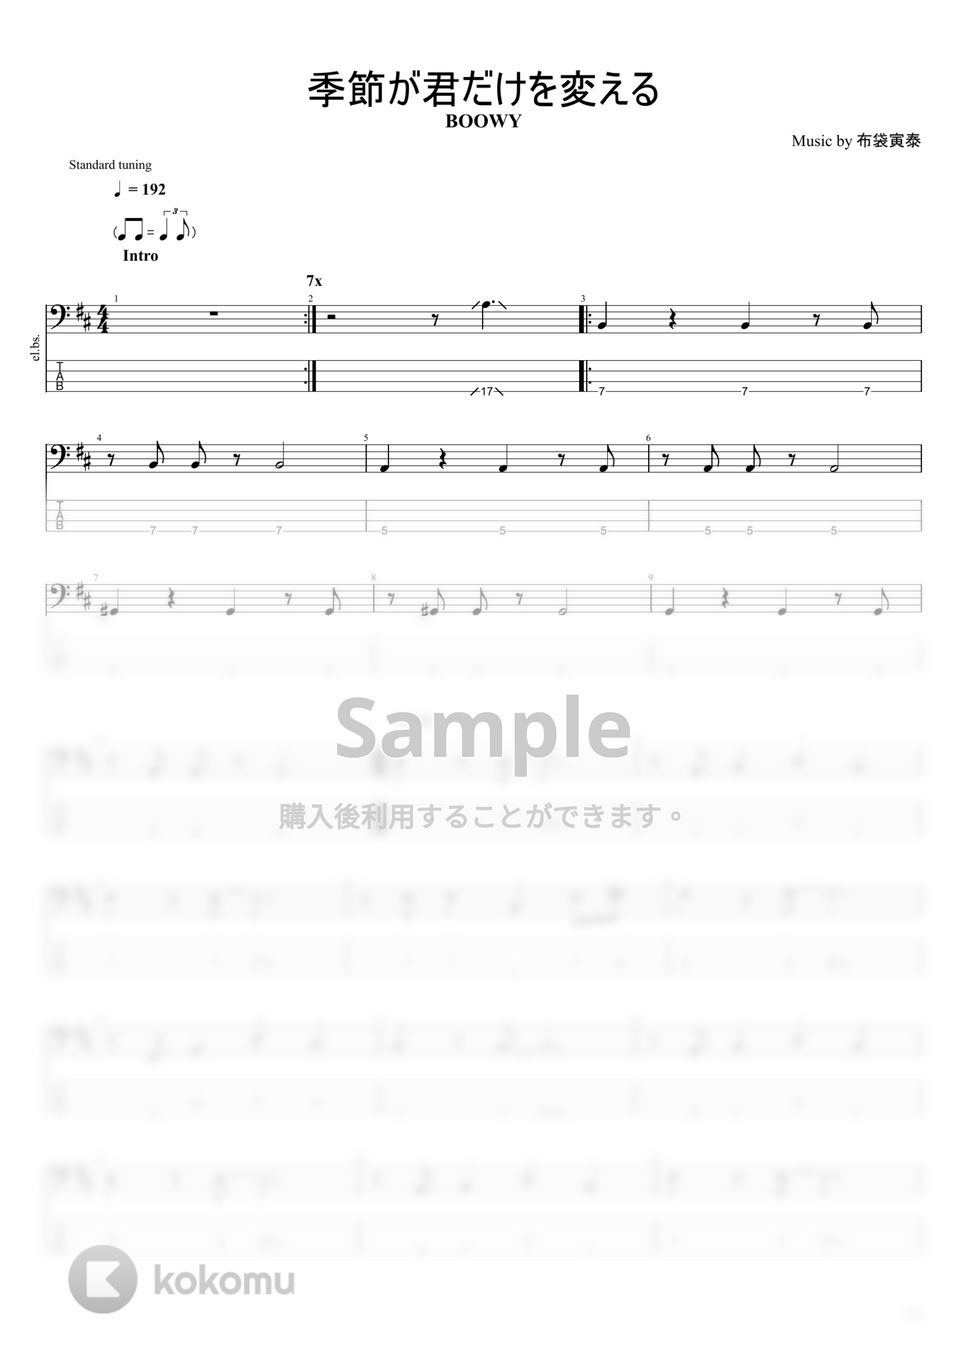 BOOWY - BOOWY楽譜集Vol.1 (15曲) タブ + 五線譜 by まっきん